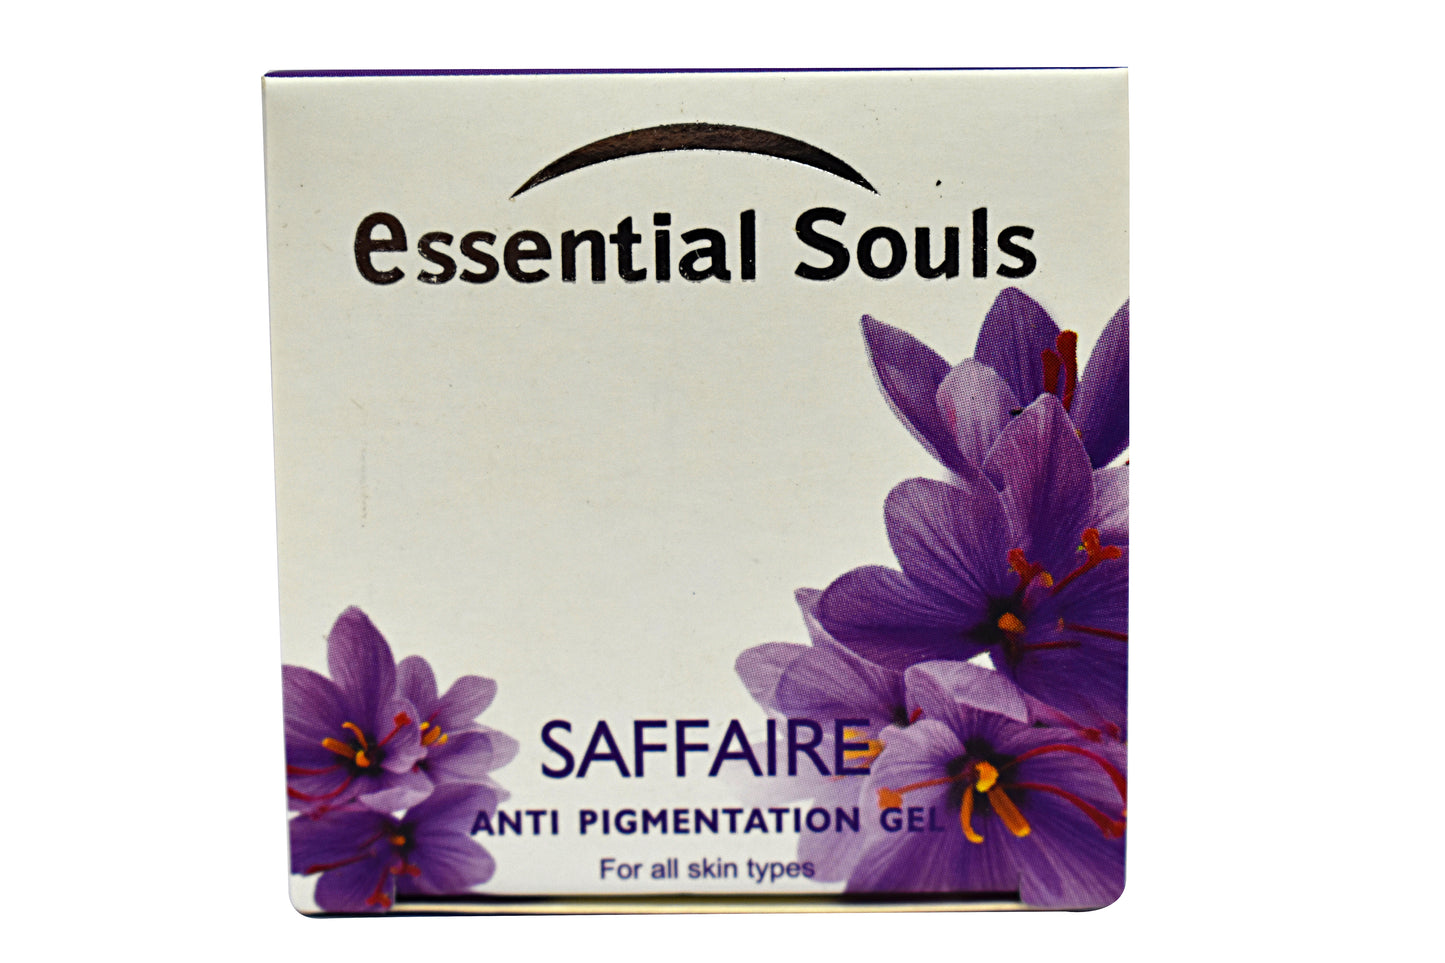 Essential Souls Saffaire Anti Pigmentation Gel - 50g